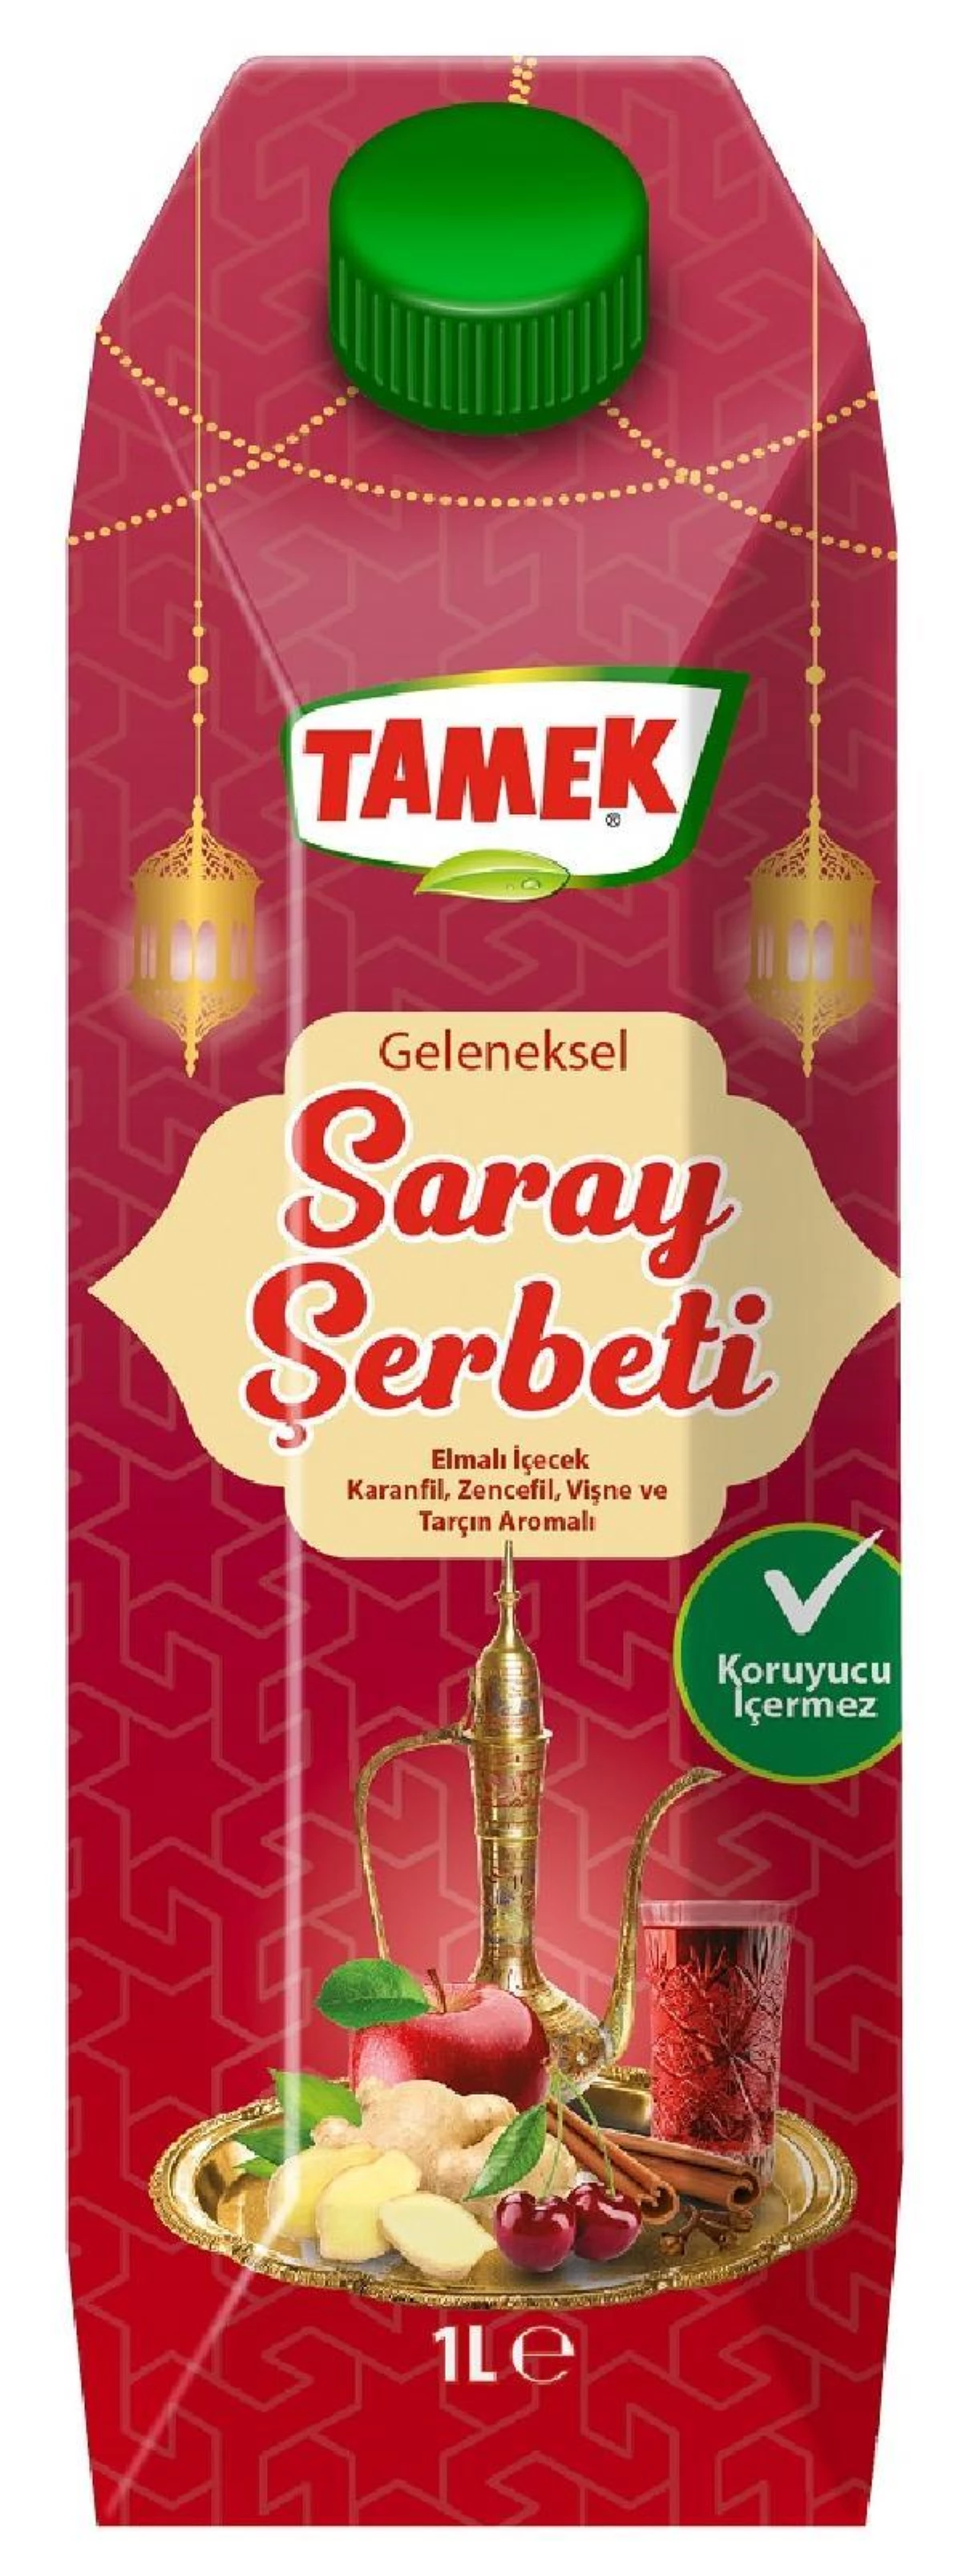 Son dakika ekonomi: Tamek, geleneksel Saray Şerbeti\'ni yeniden satışa sundu